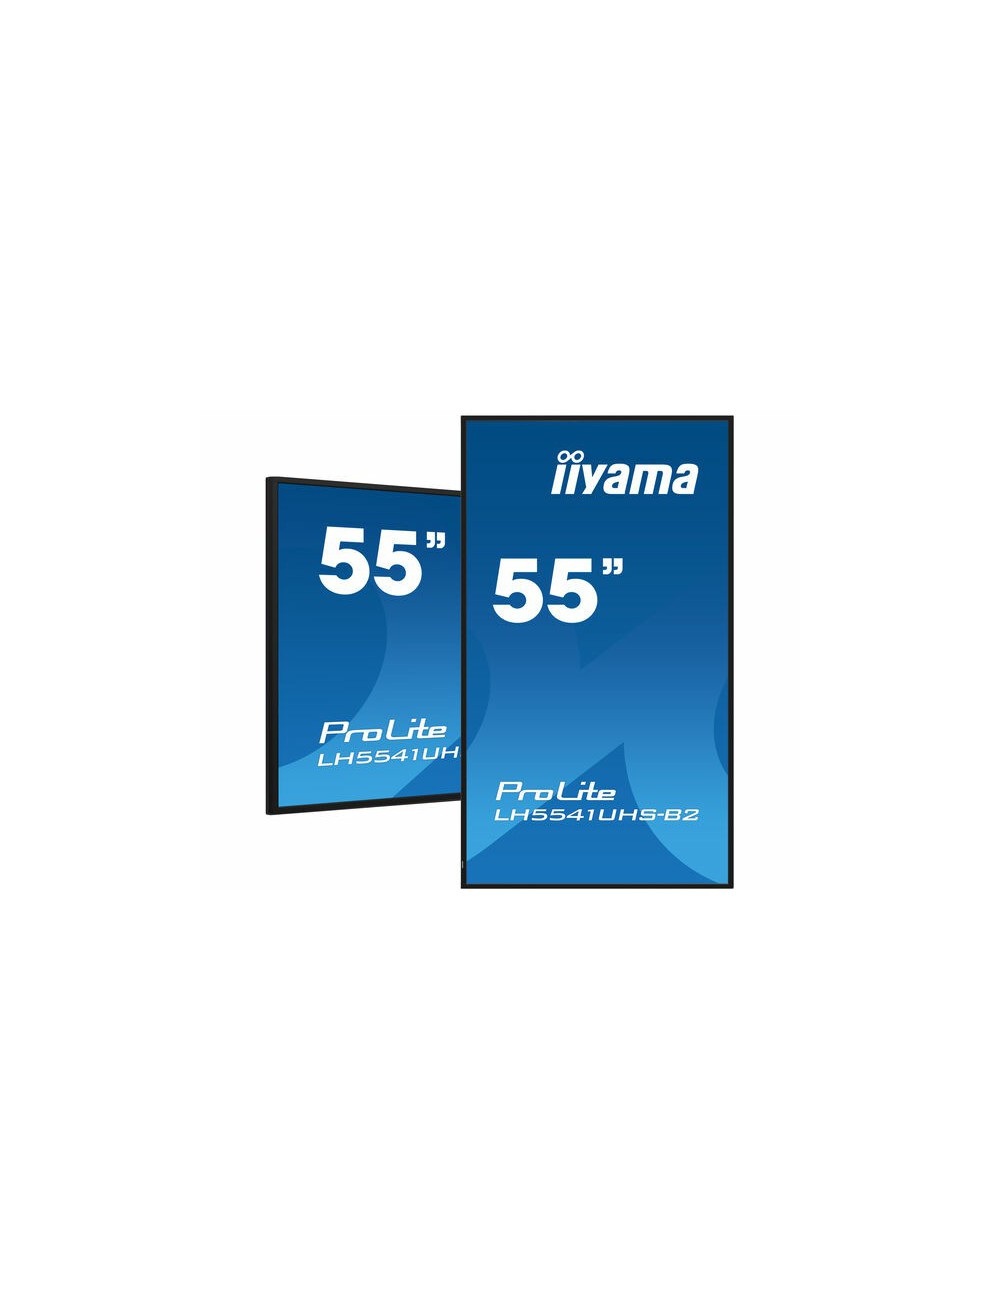 iiyama LH5541UHS-B2 pantalla de señalización Diseño de quiosco 138,7 cm (54.6") LCD 500 cd m² 4K Ultra HD Negro Procesador